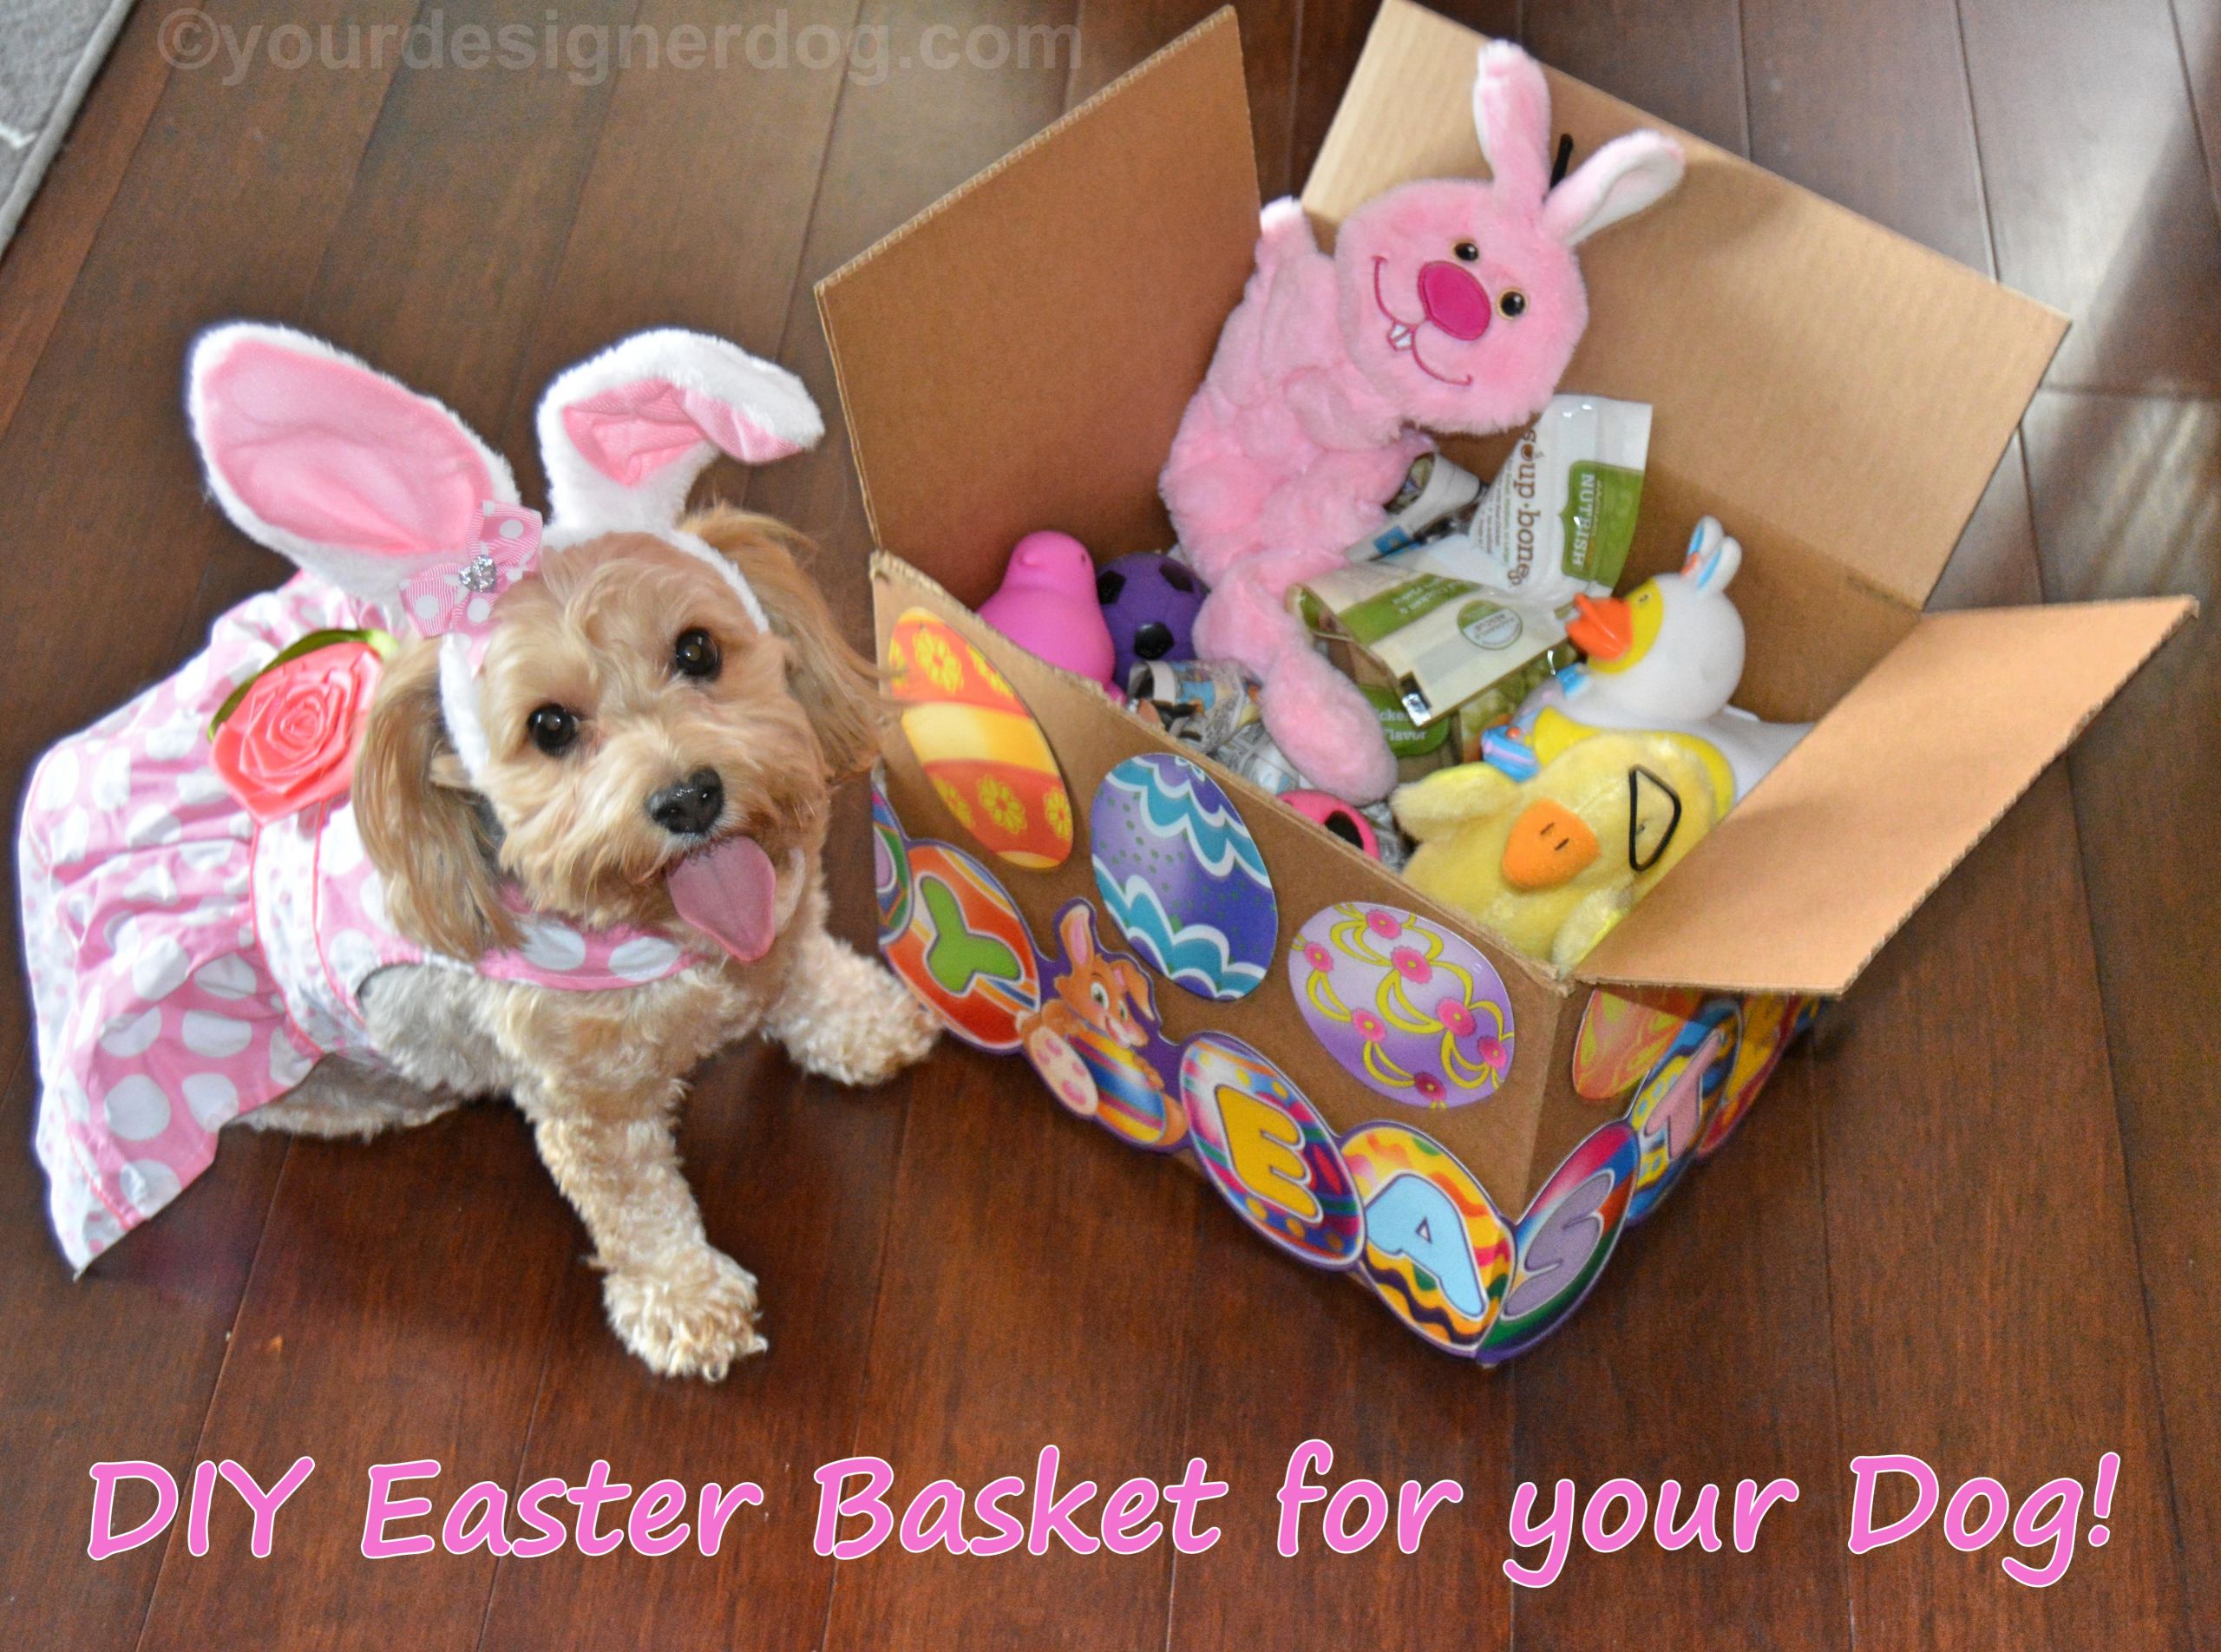 Easter Basket Ideas For Dogs
 A DIY Easter Basket Your Dog Will Love YourDesignerDog